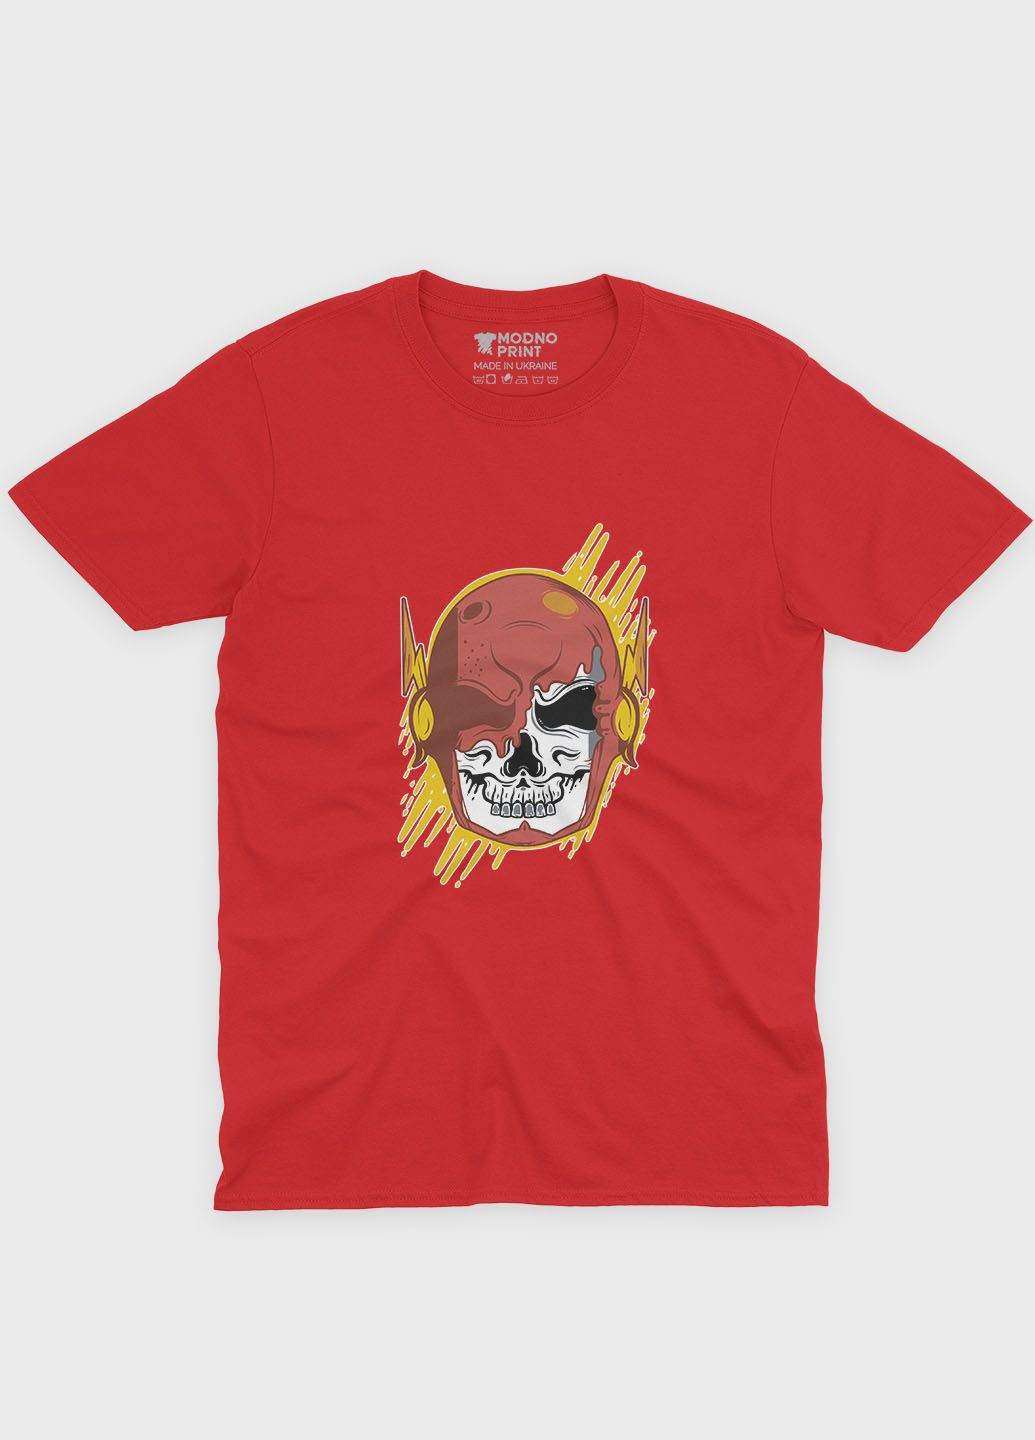 Червона демісезонна футболка для дівчинки з принтом супергероя - флеш (ts001-1-sre-006-010-003-g) Modno